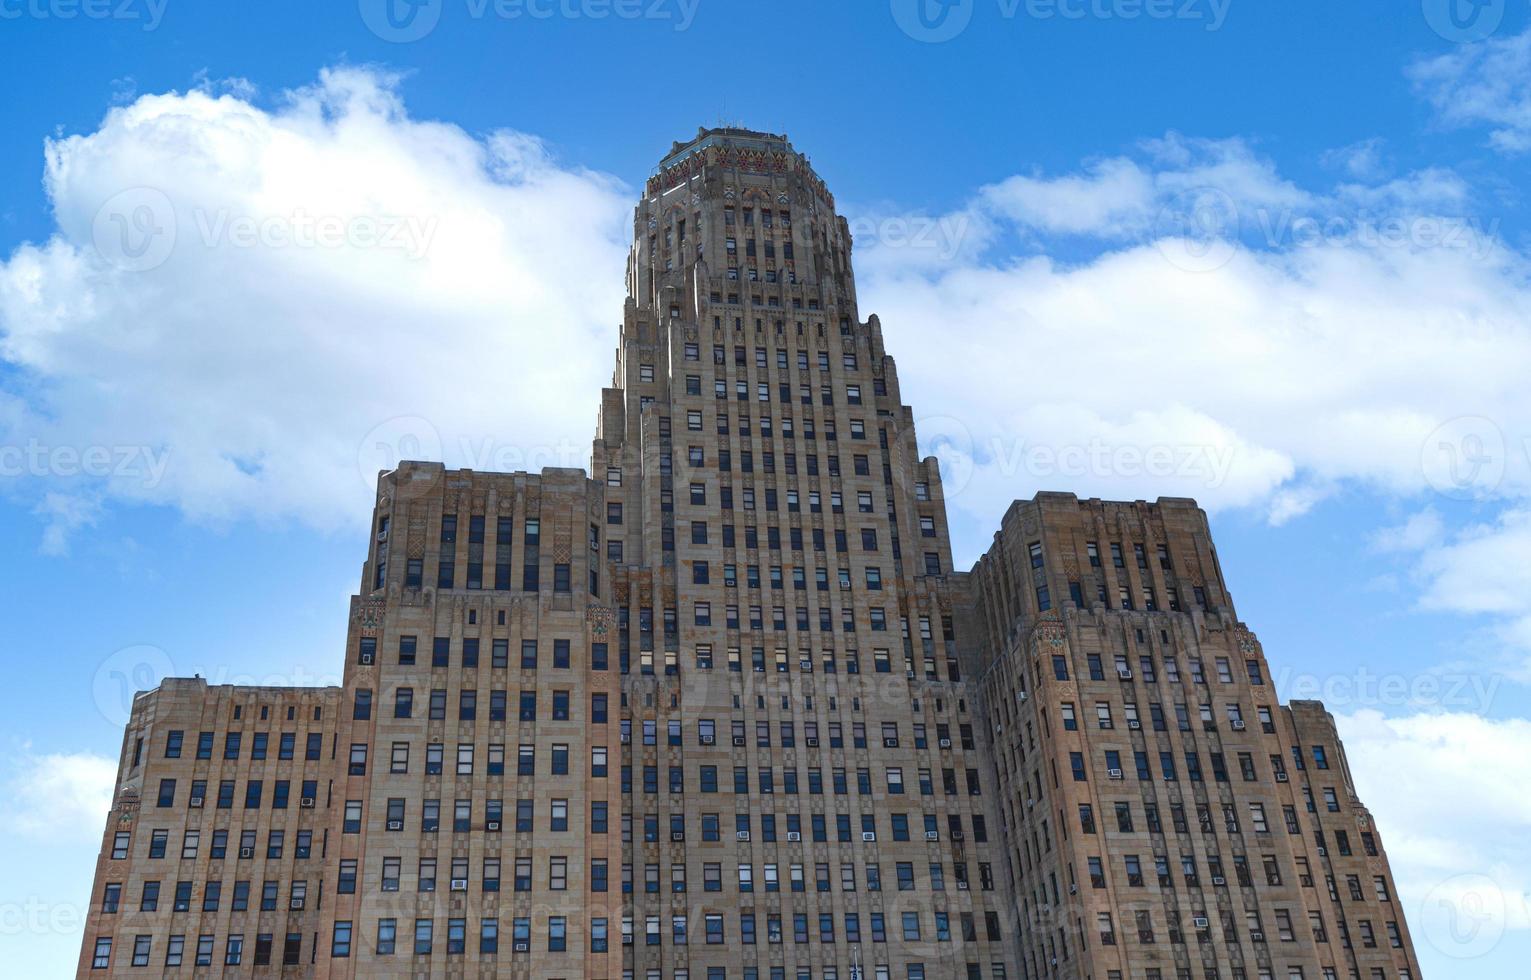 ayuntamiento de buffalo, el edificio de 378 pies de altura es la sede del gobierno municipal, uno de los edificios municipales más grandes y altos de los estados unidos foto